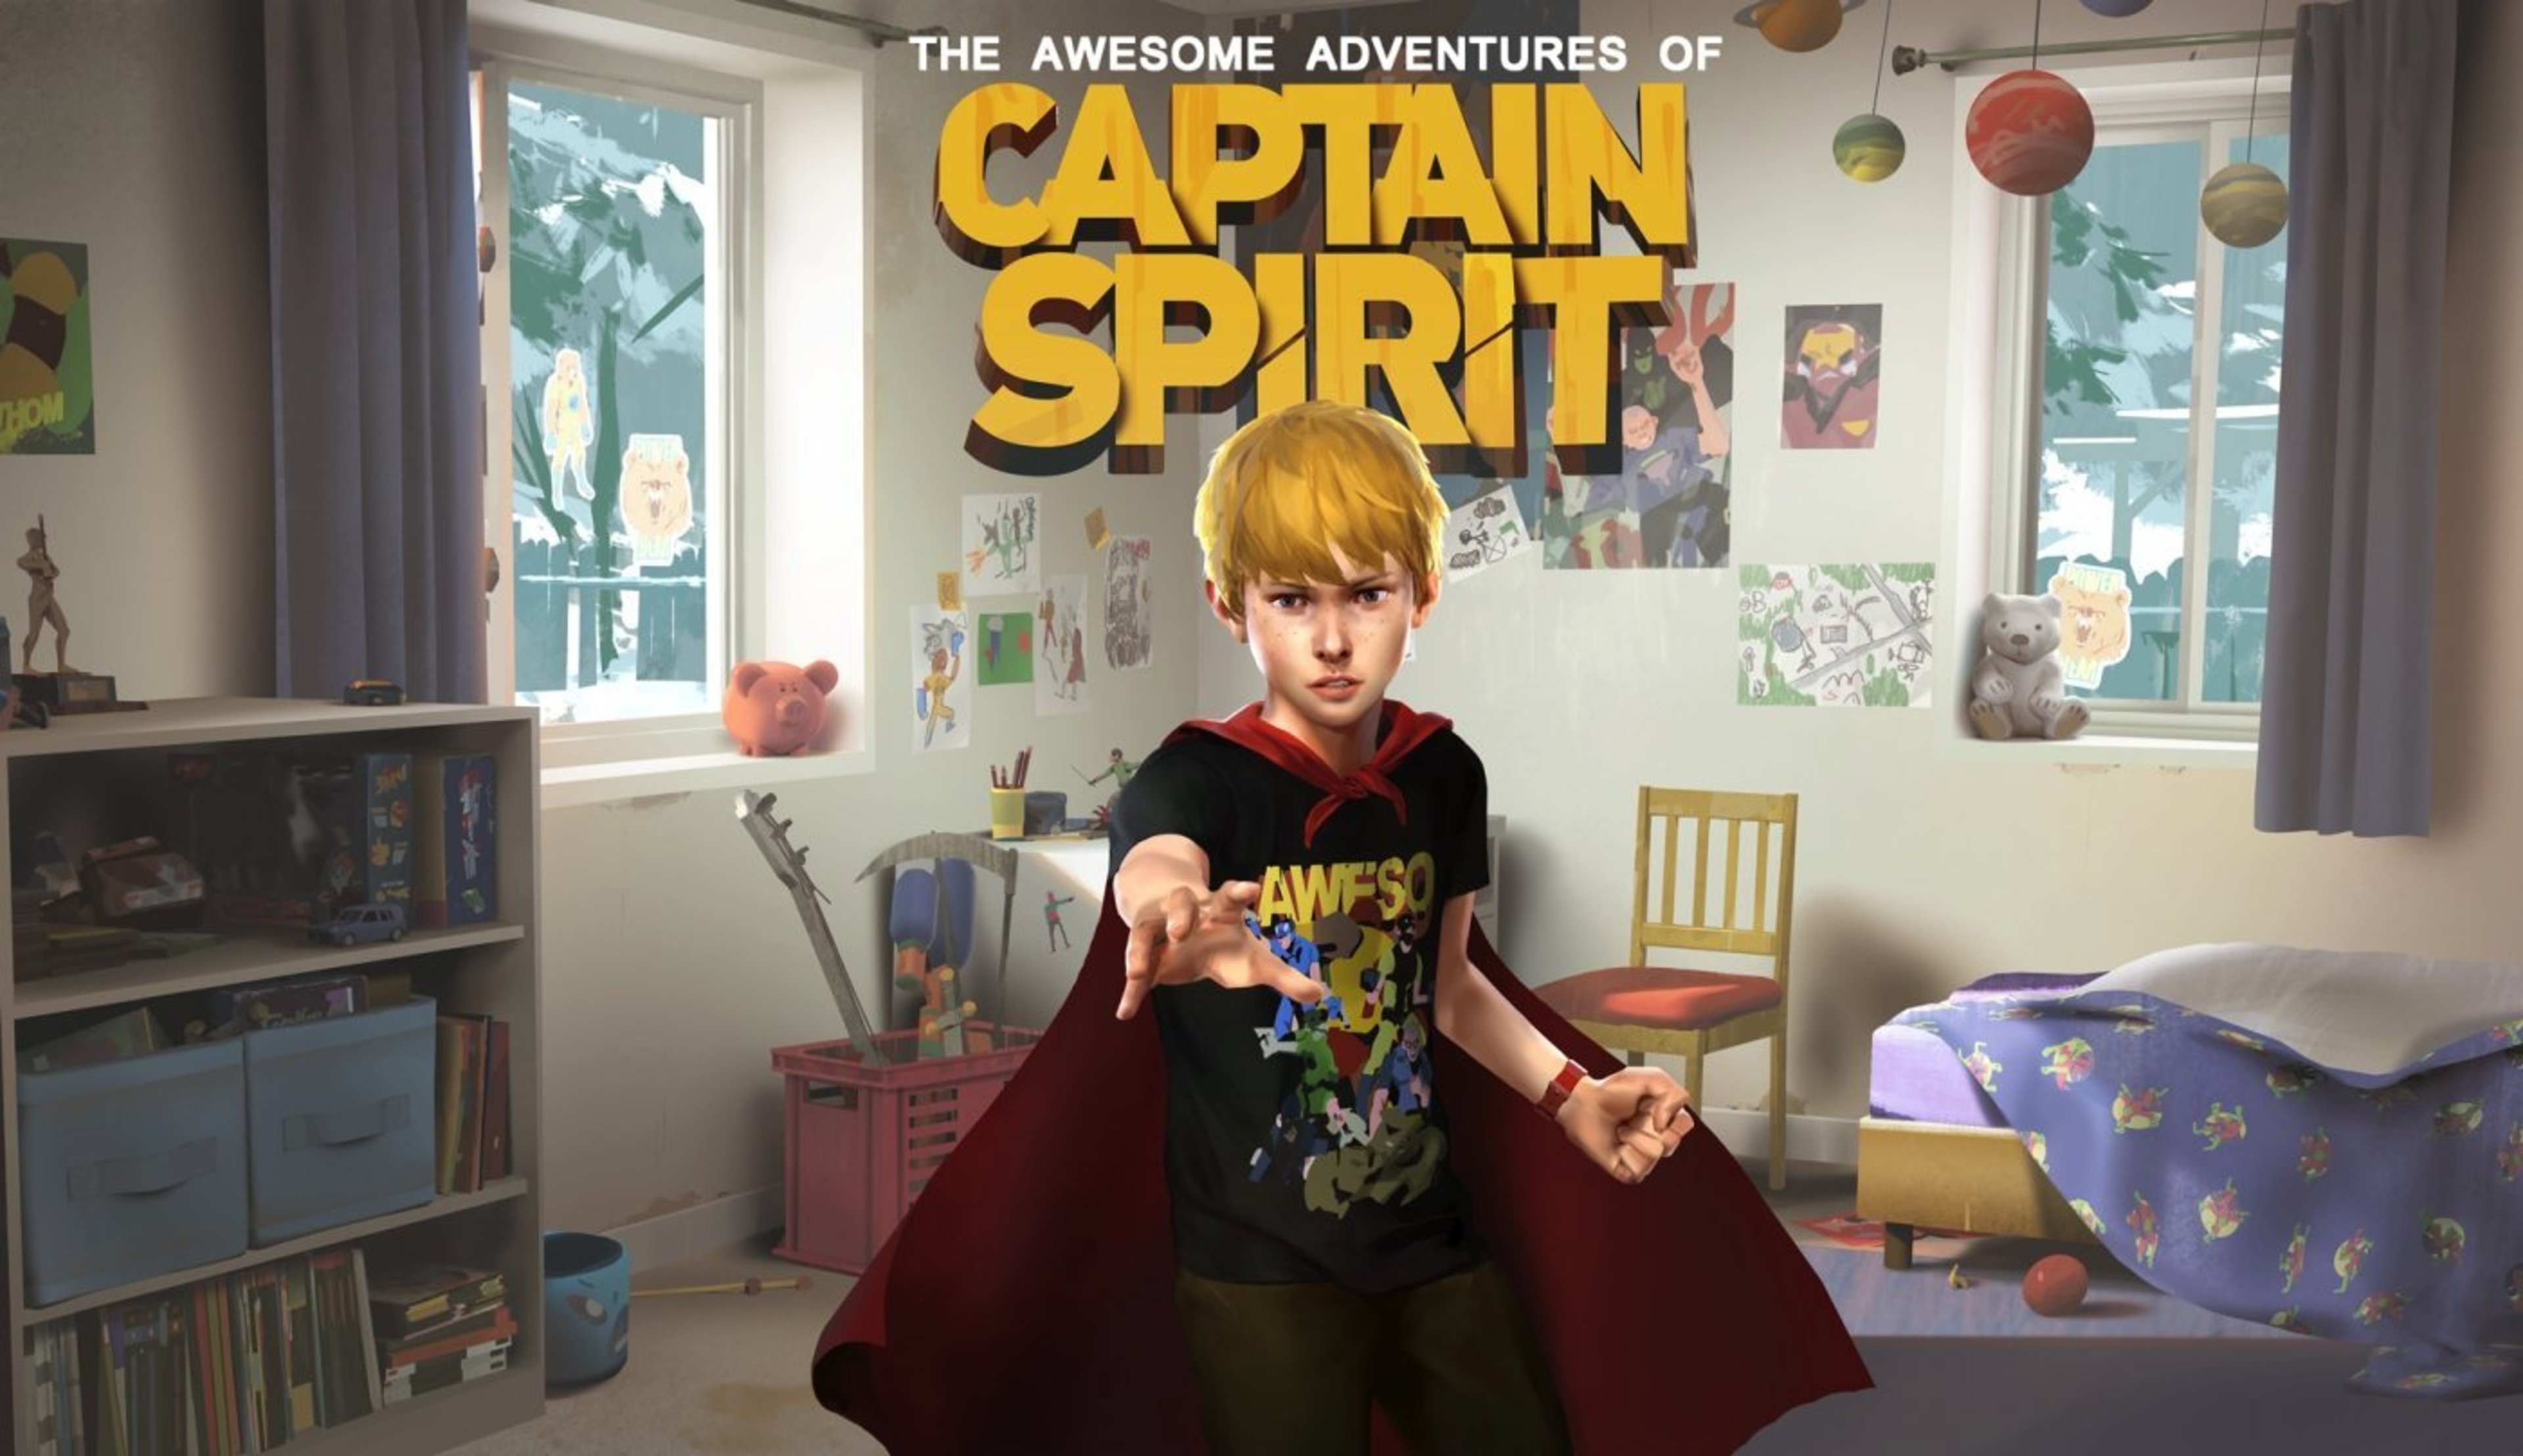 Le fantastiche avventure di Captain Spirit, provato il prequel.